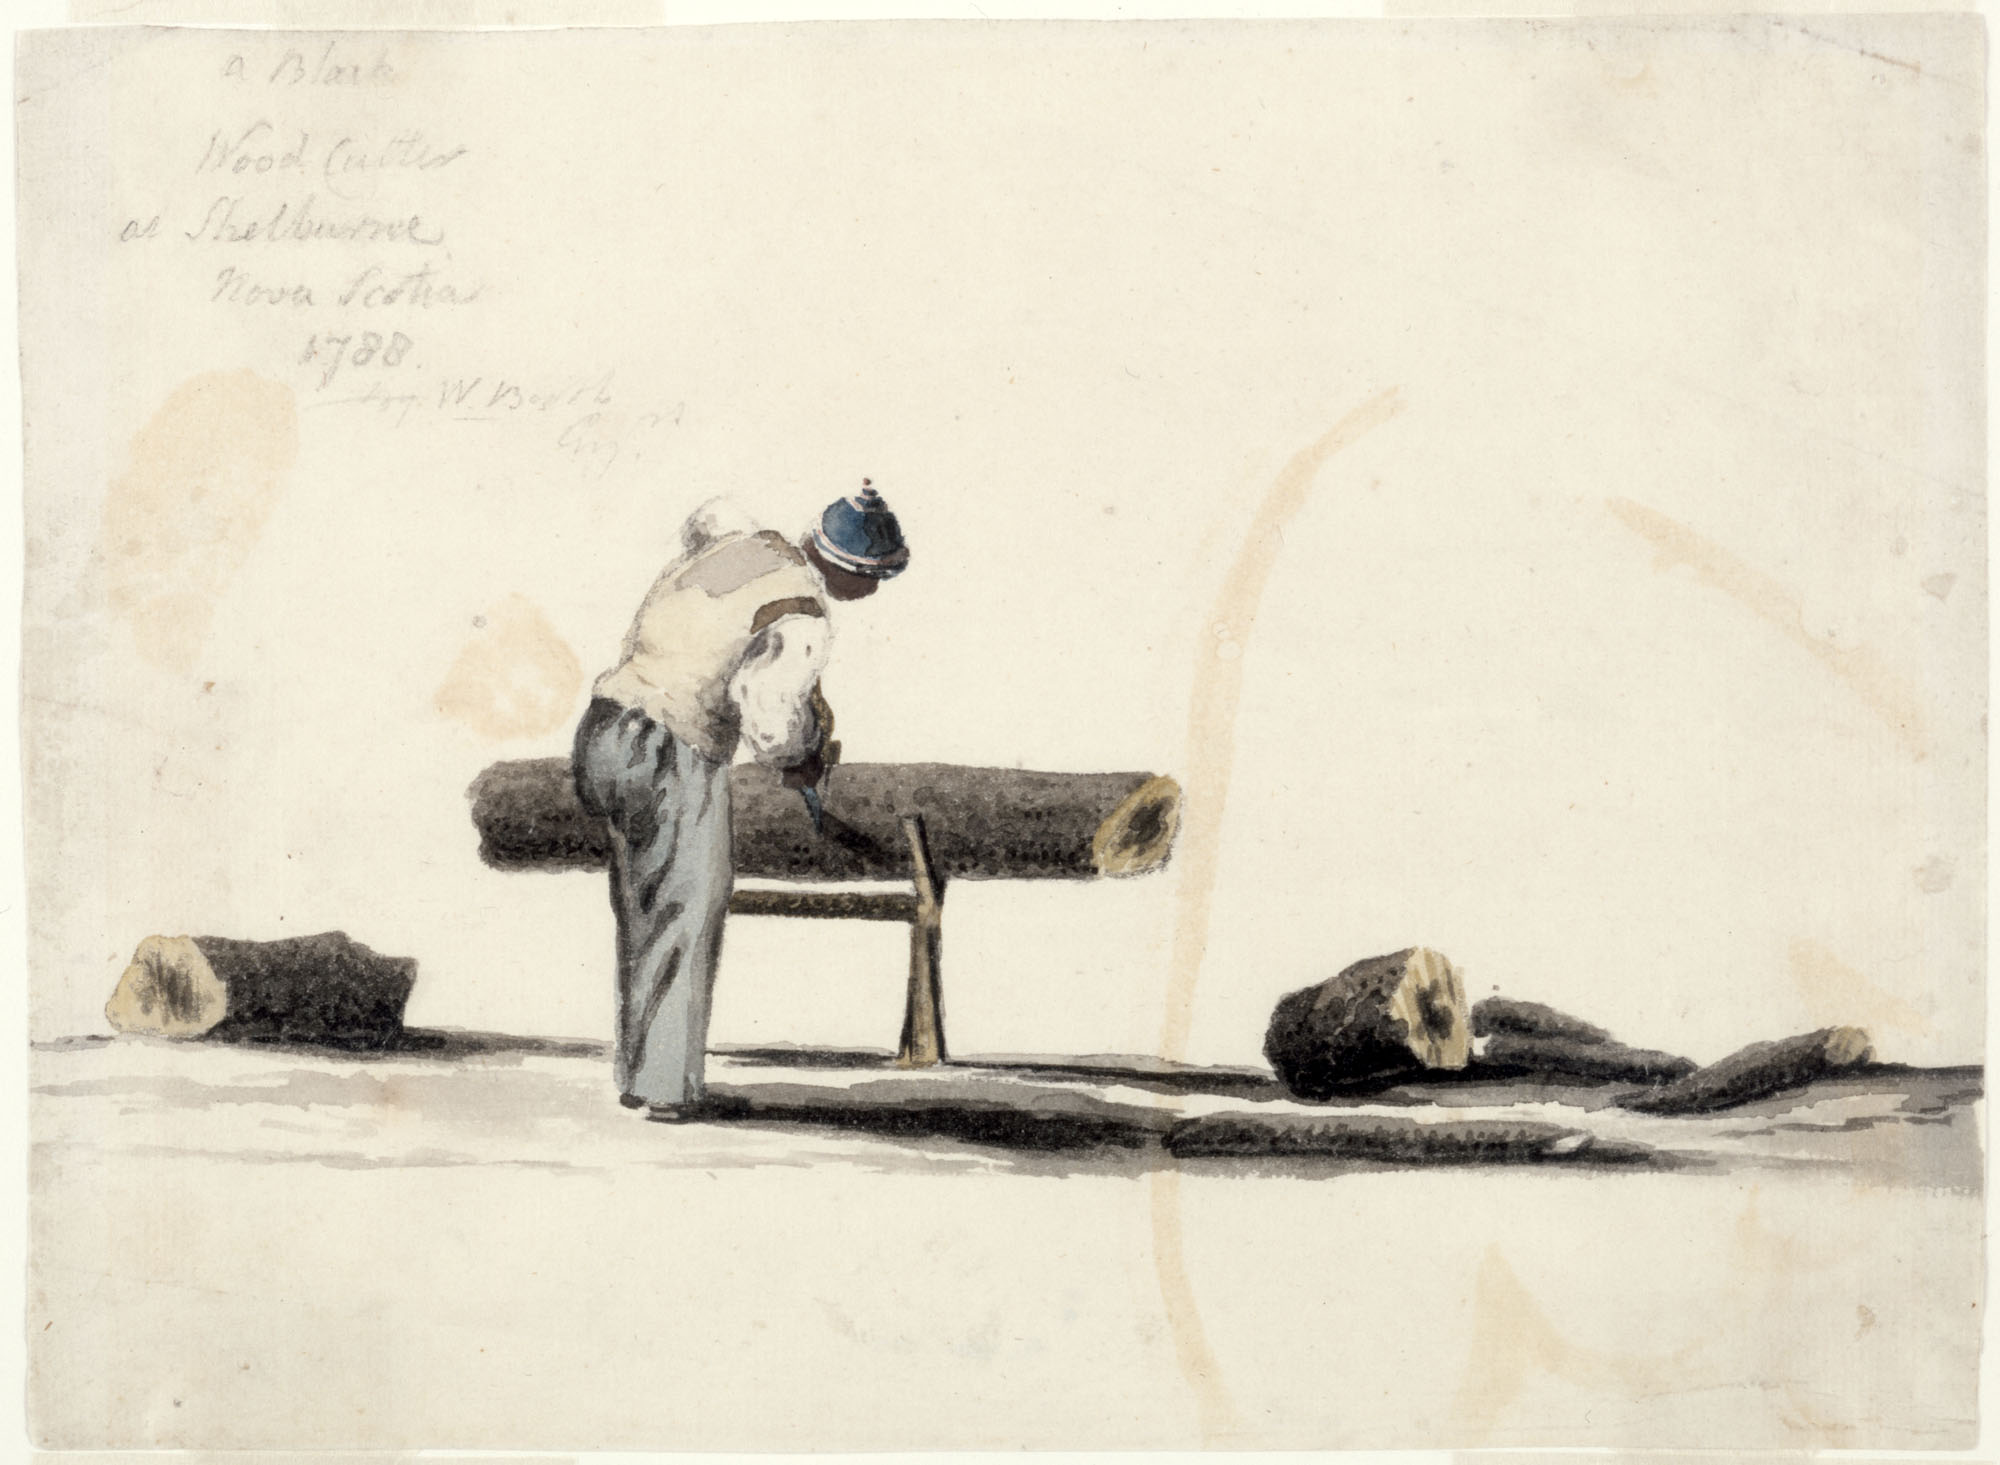 Aquarelle représentant un homme vu de dos. Il est en train de scier une grosse bûche qui repose horizontalement sur un simple tréteau de bois. L’homme porte le bonnet bleu et blanc de la liberté.